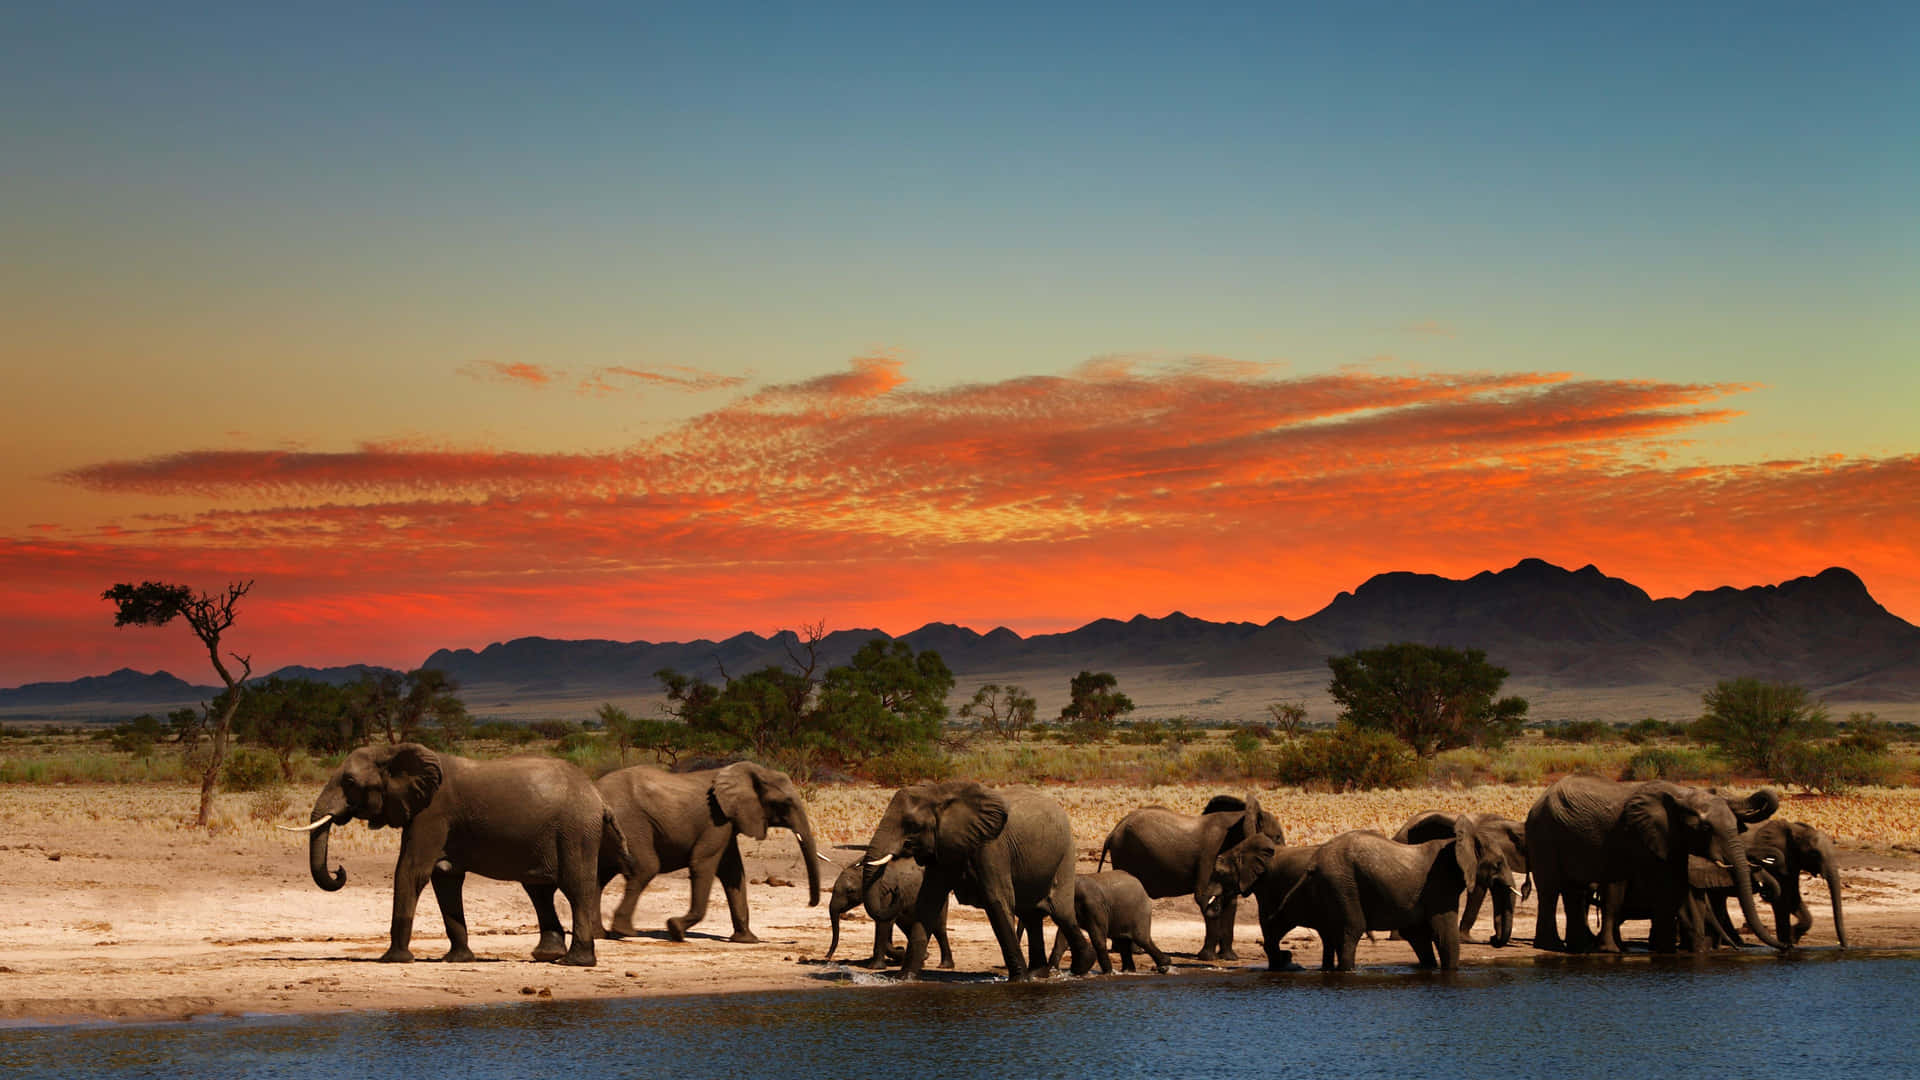 Immaginecon Tramonto Estetico Degli Elefanti Nel Safari Africano.